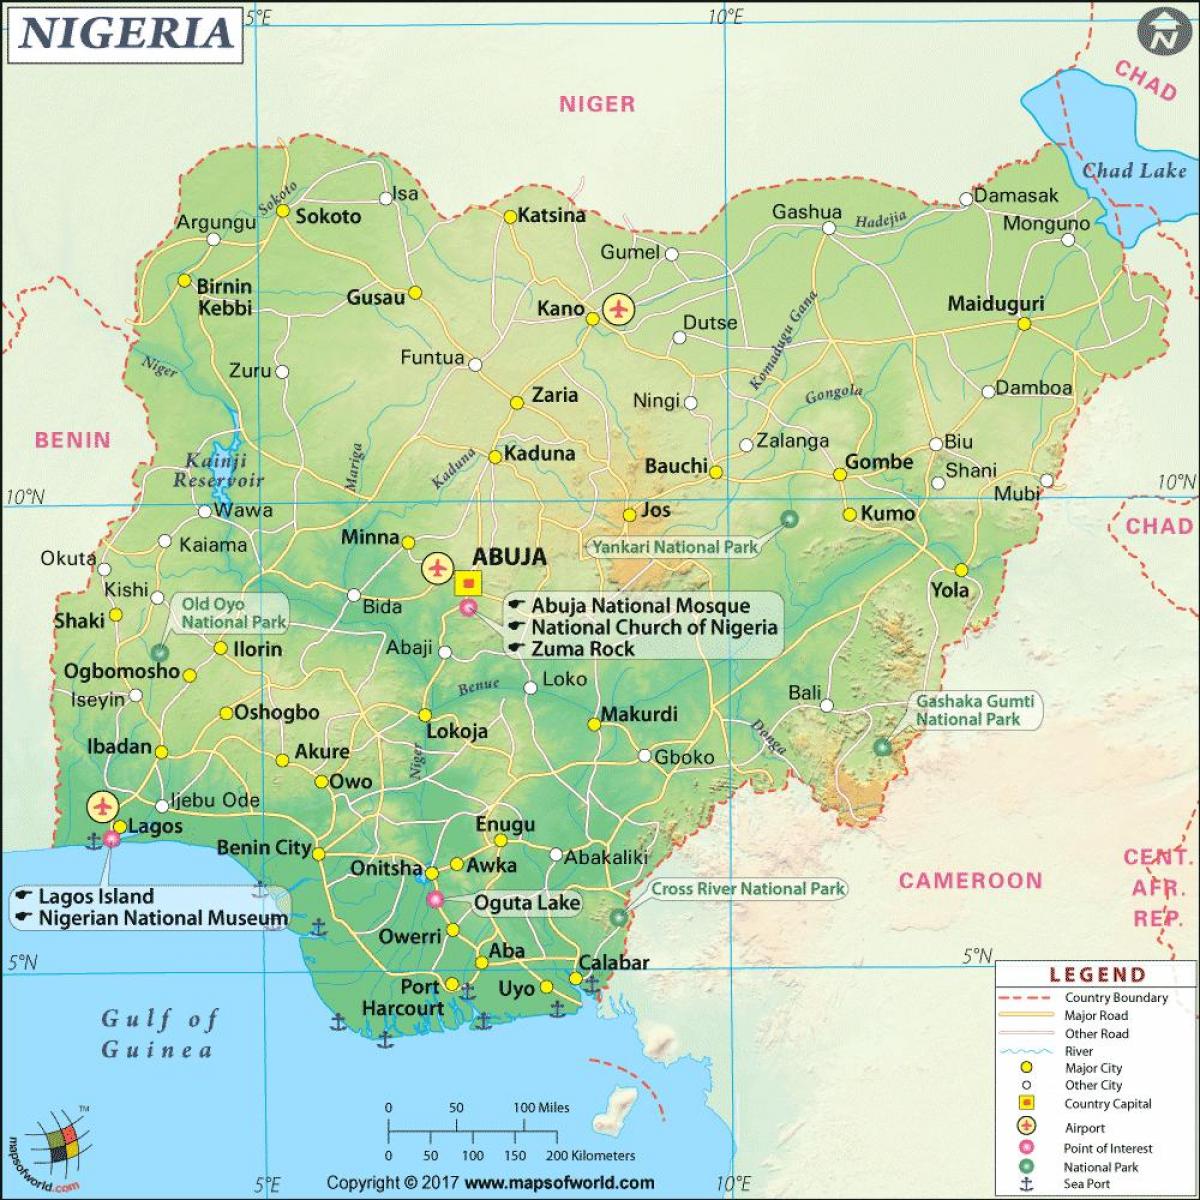 სურათები ნიგერიის რუკა